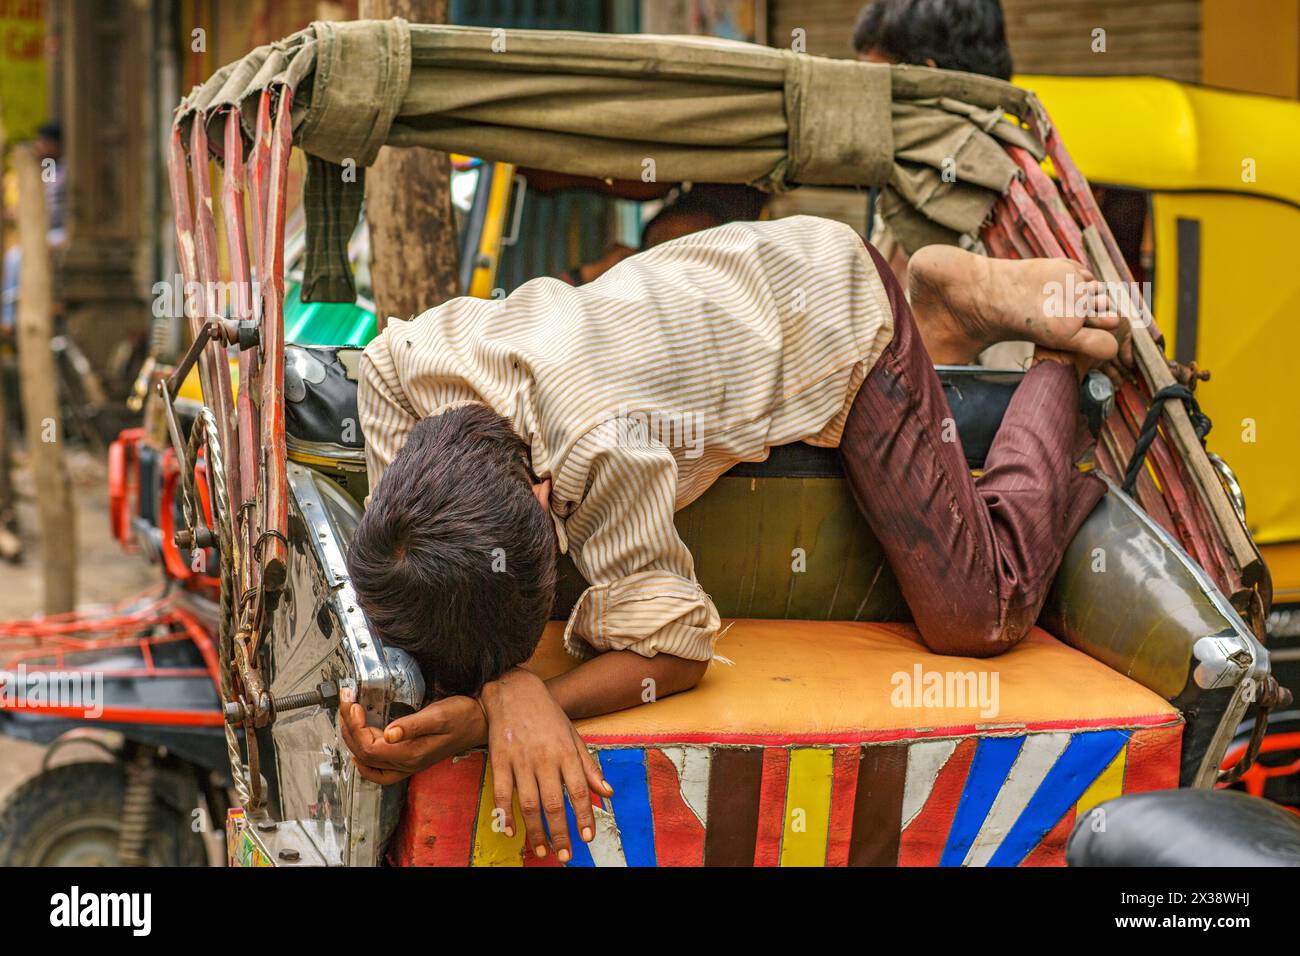 Junge, die auf dem Beifahrersitz einer Radrikscha in Varanasi, Indien, schlafen. Stockfoto